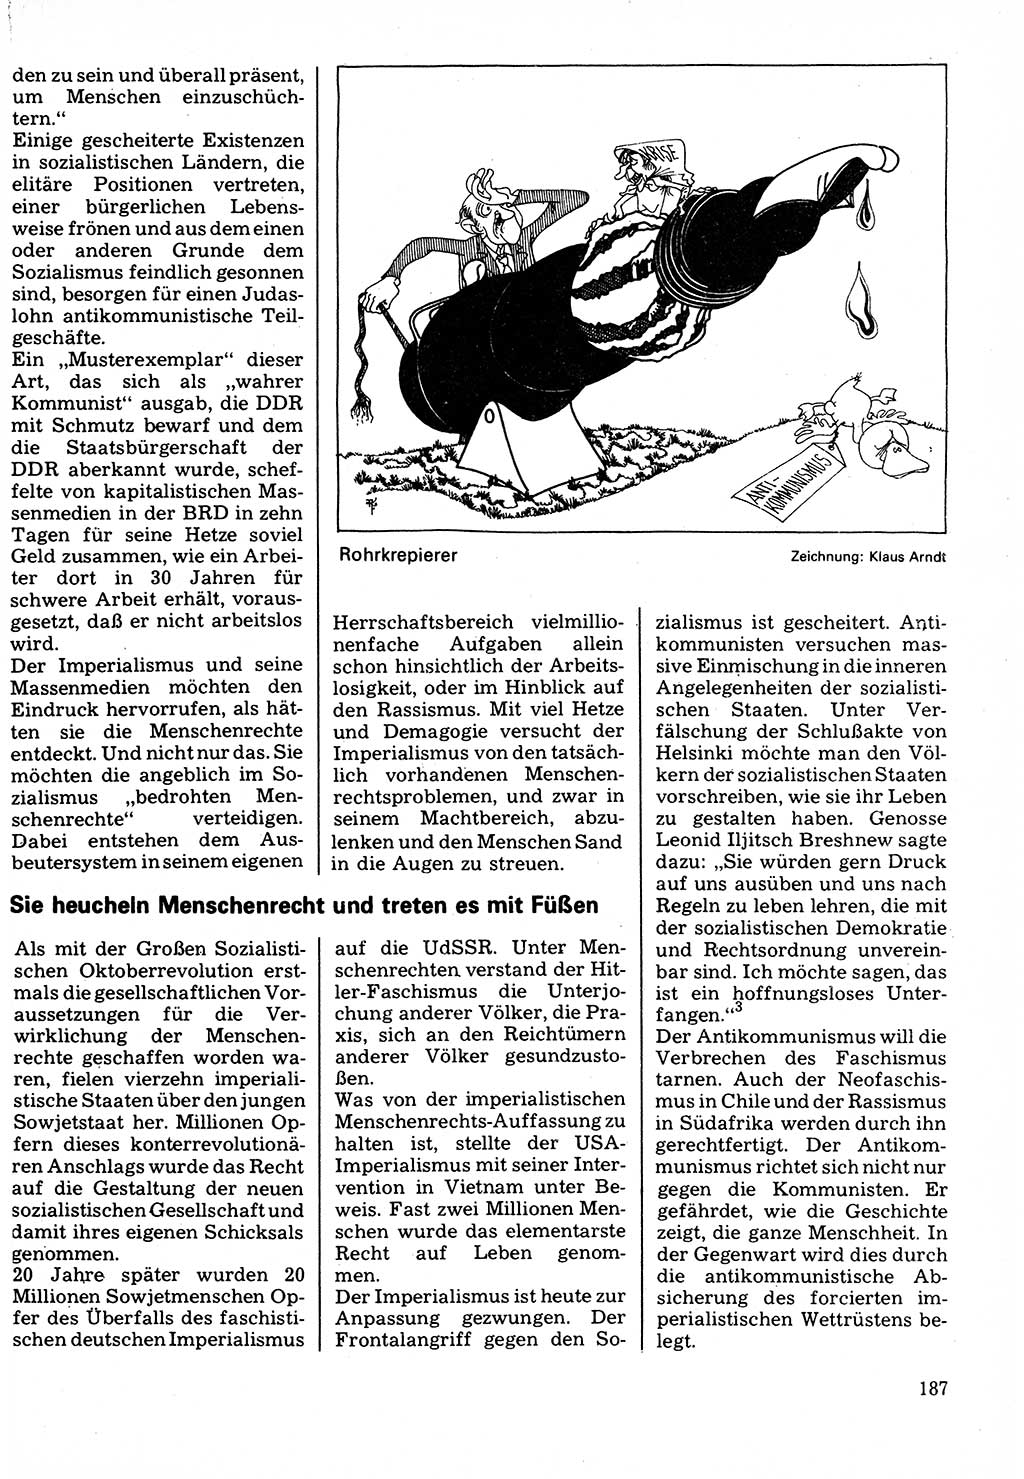 Neuer Weg (NW), Organ des Zentralkomitees (ZK) der SED (Sozialistische Einheitspartei Deutschlands) für Fragen des Parteilebens, 32. Jahrgang [Deutsche Demokratische Republik (DDR)] 1977, Seite 187 (NW ZK SED DDR 1977, S. 187)